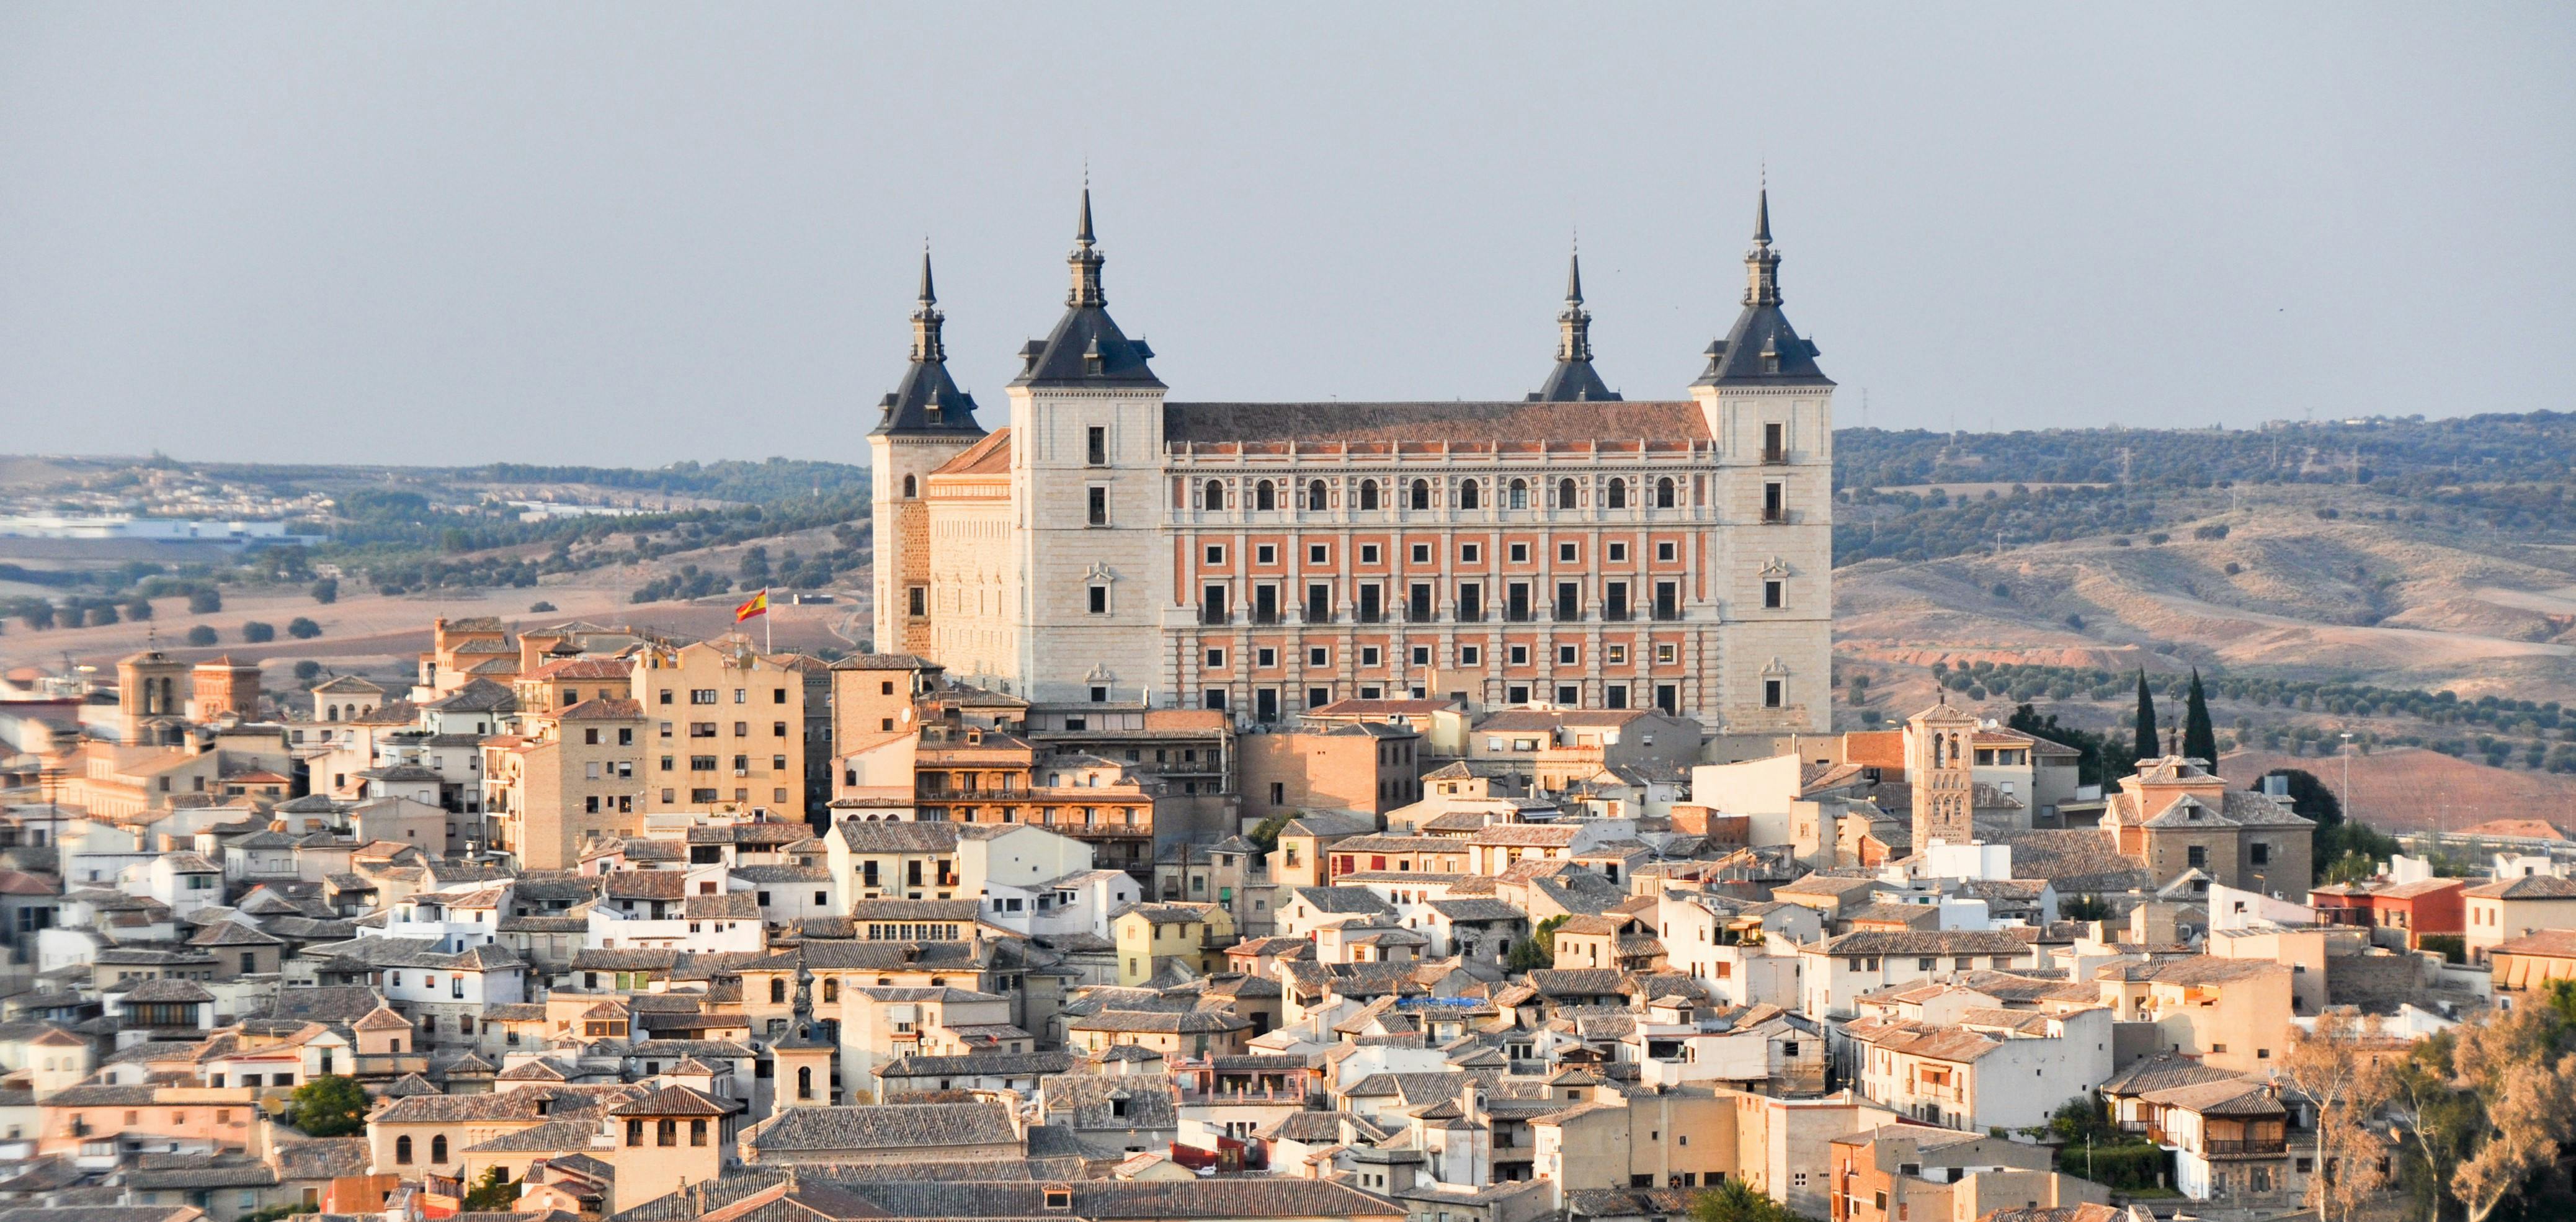 Excursão de meio dia a Toledo saindo de Madri com ingressos para a catedral